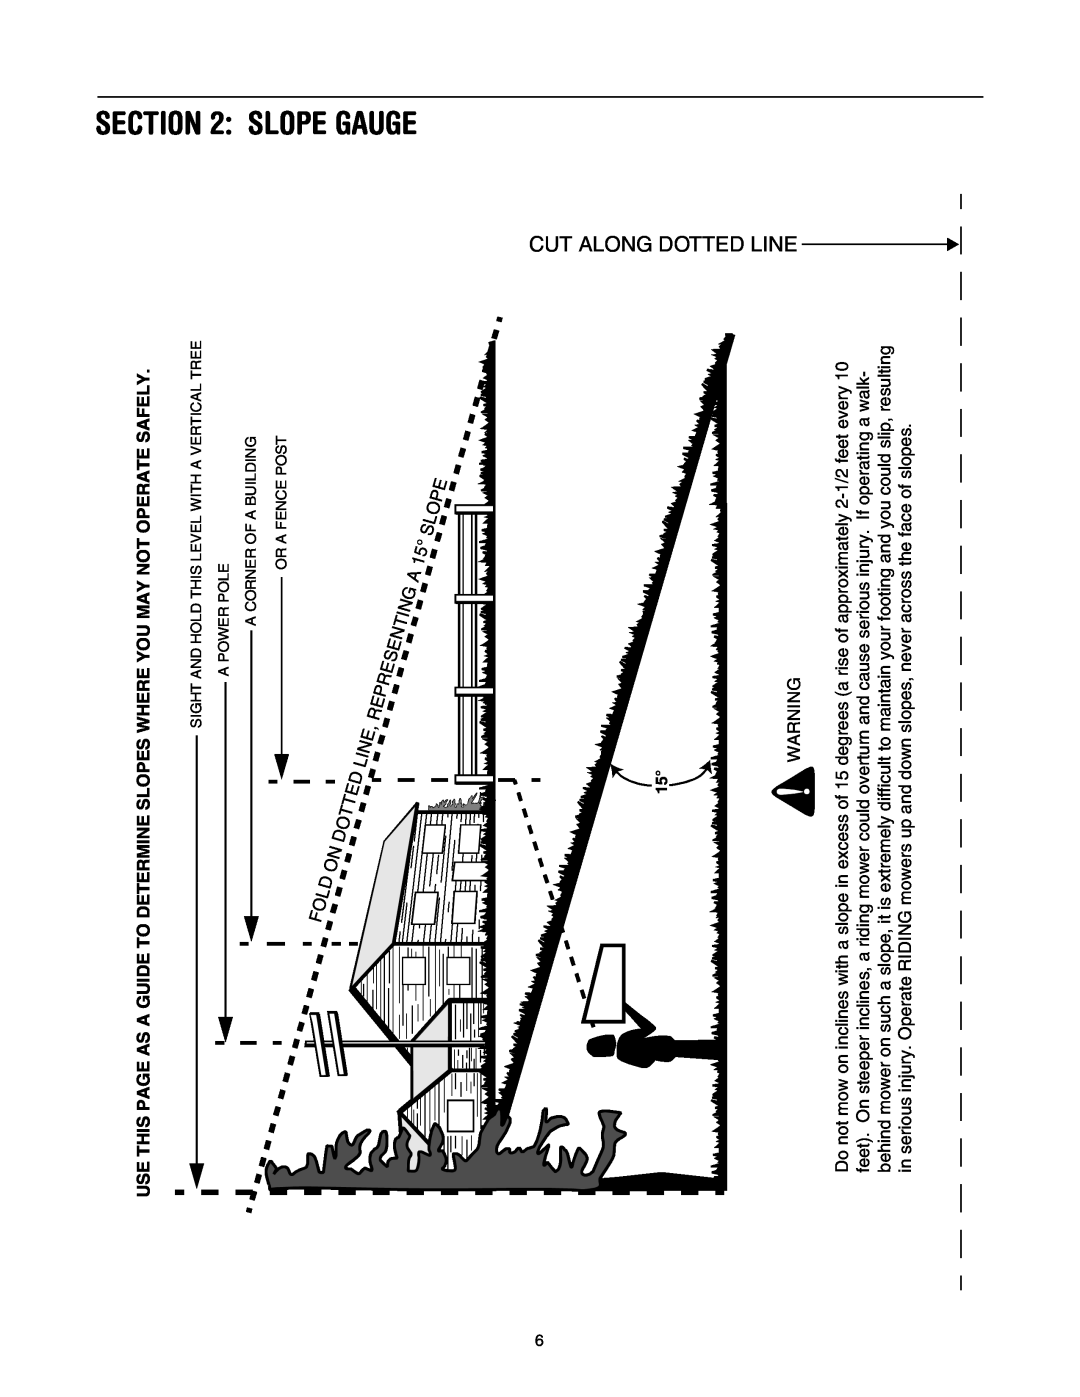 Bolens 416 manual Slope Gauge, Cut Along Dotted Line 